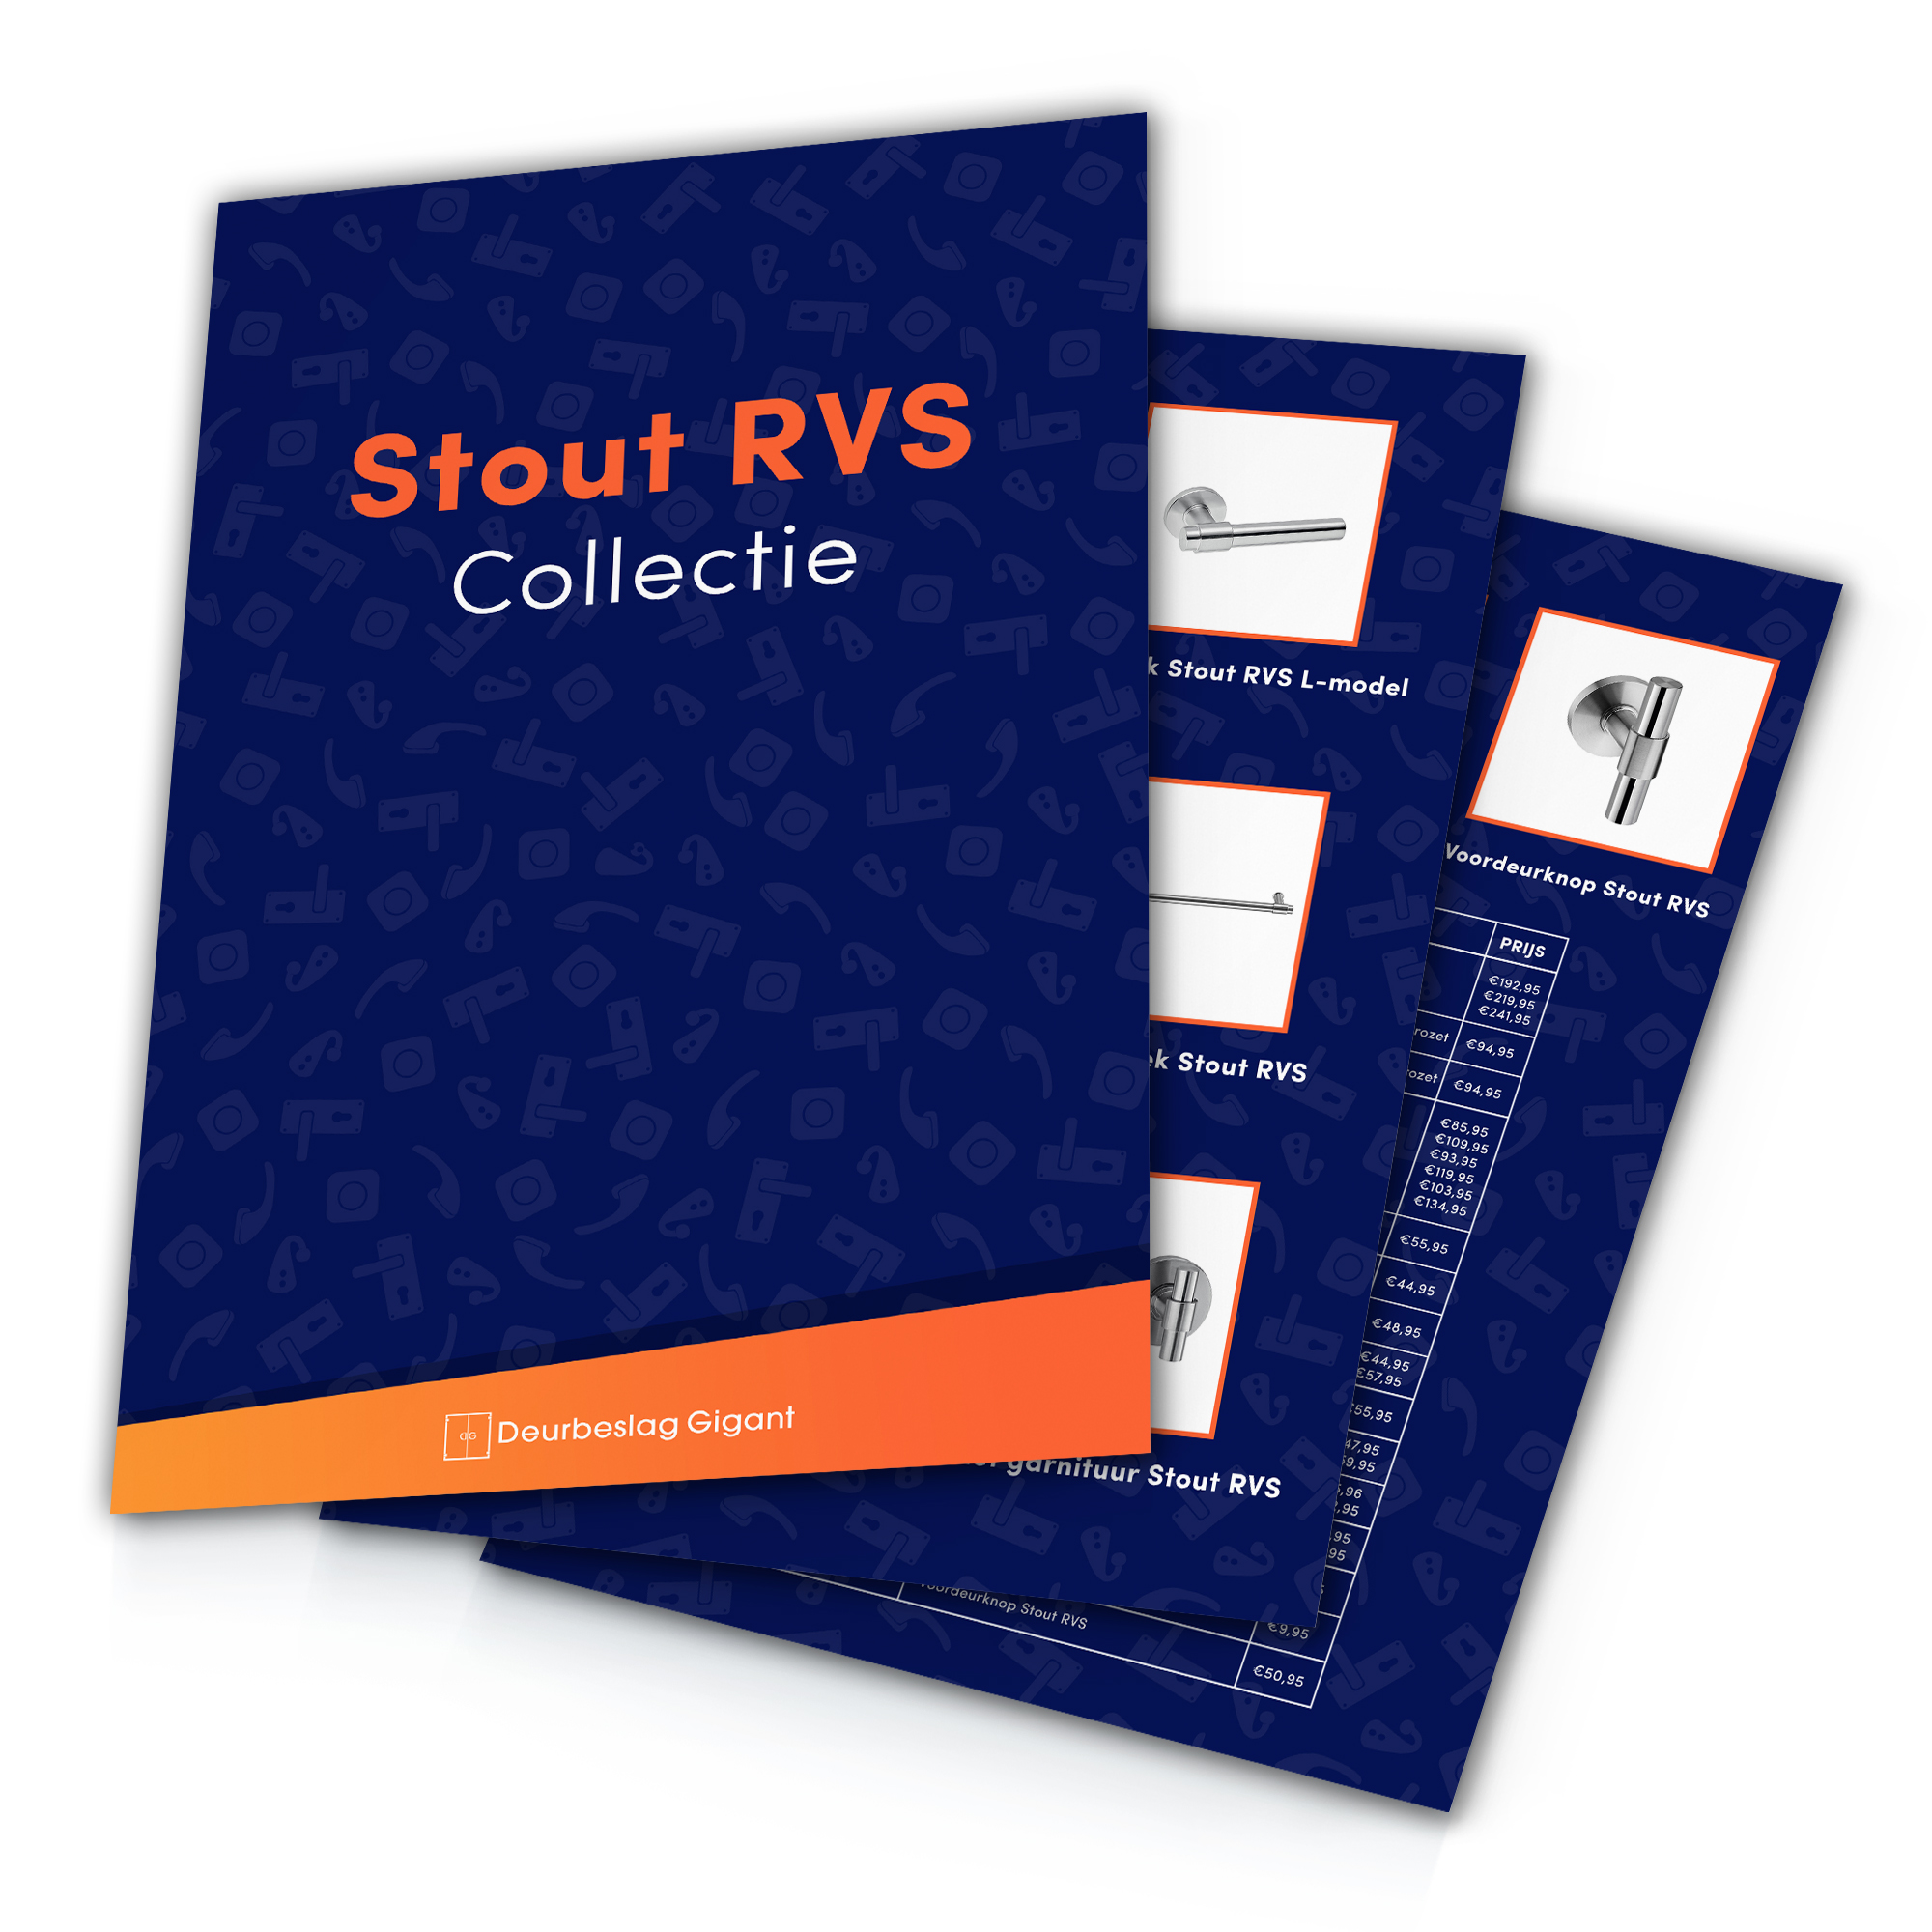 Stout RVS Collectie